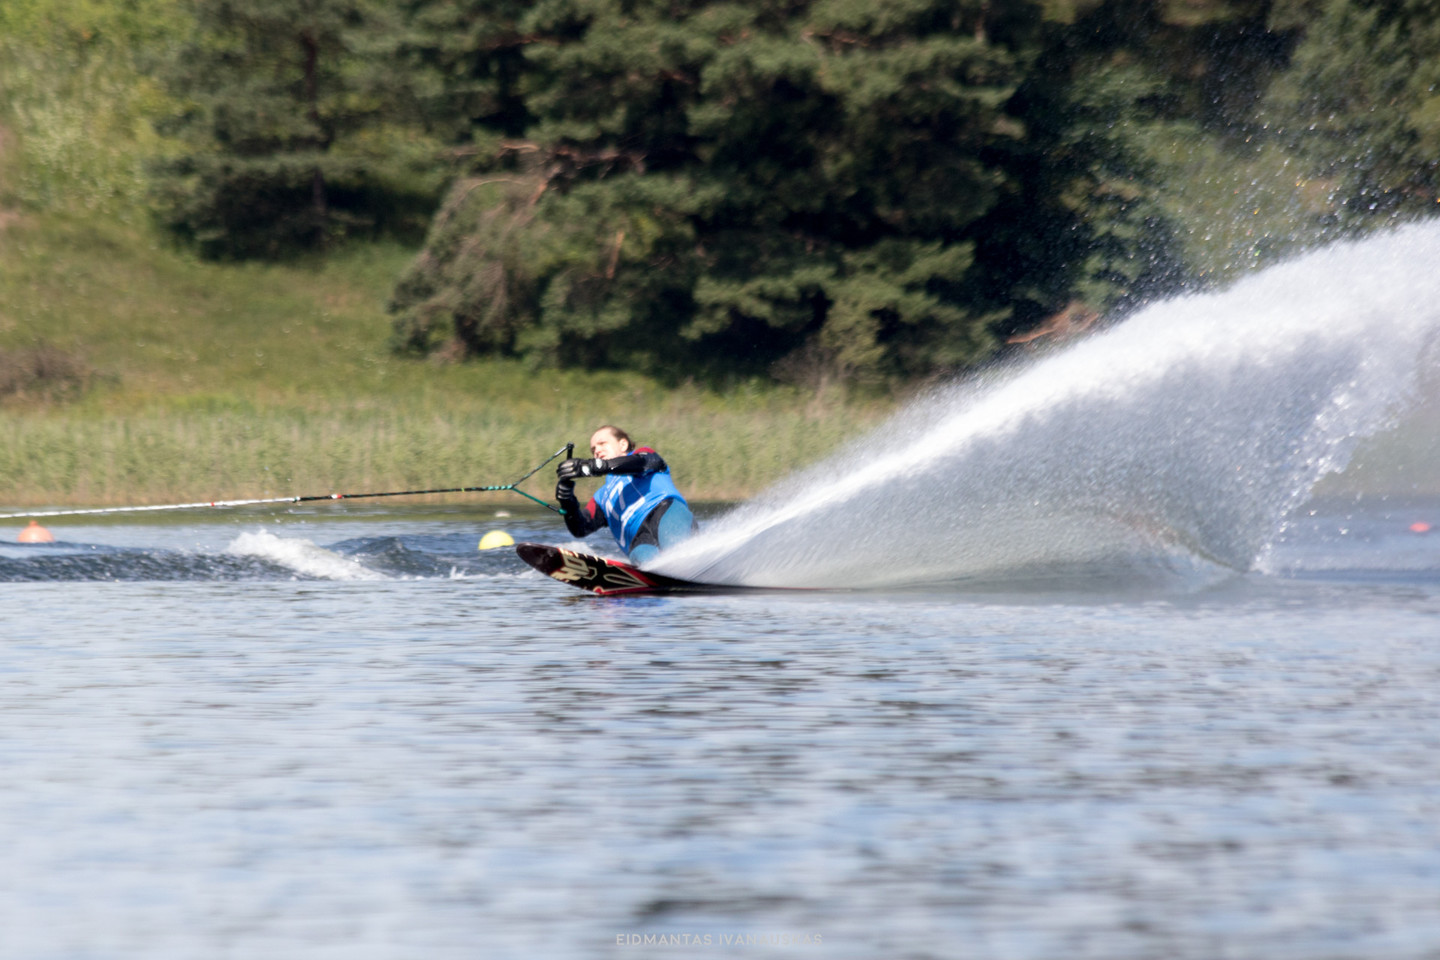 Lietuvoje pirmą kartą surengtų Tarptautinės vandens slidinėjimo federacijos standartus oficialiai atitinkančių varžybų dalyviai namo išsivežė ir medalius, ir rekordus, ir gerus įspūdžius. <br> E.Ivanausko nuotr.